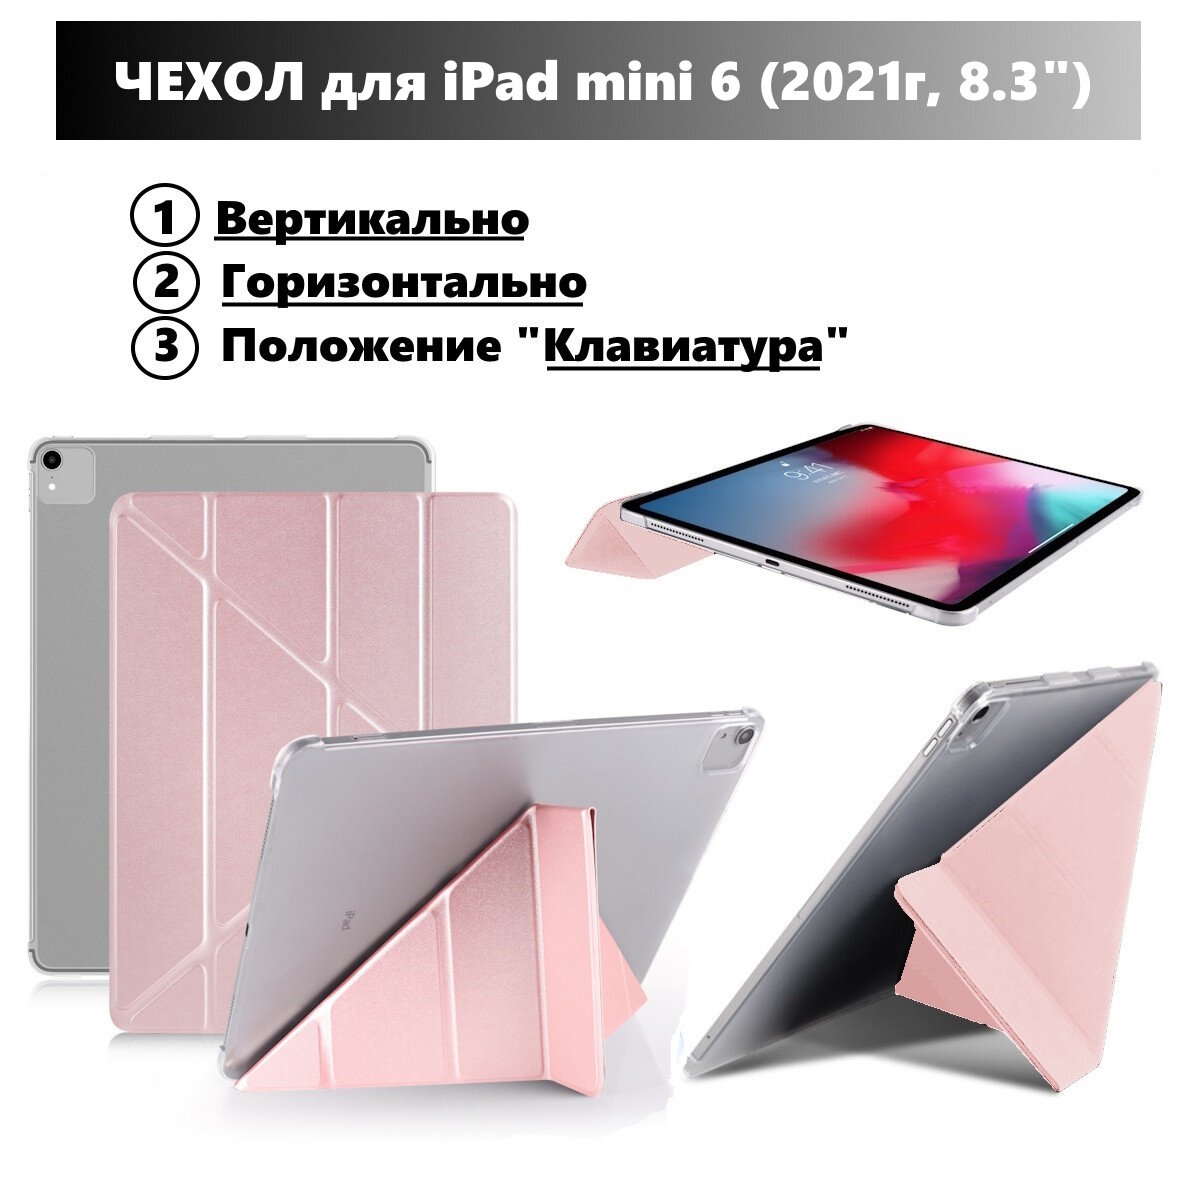 Чехол для iPad mini 6 (8.3" 2021г), горизонтальный и вертикальный умный чехол, с местом для стилуса, Розовый металлик